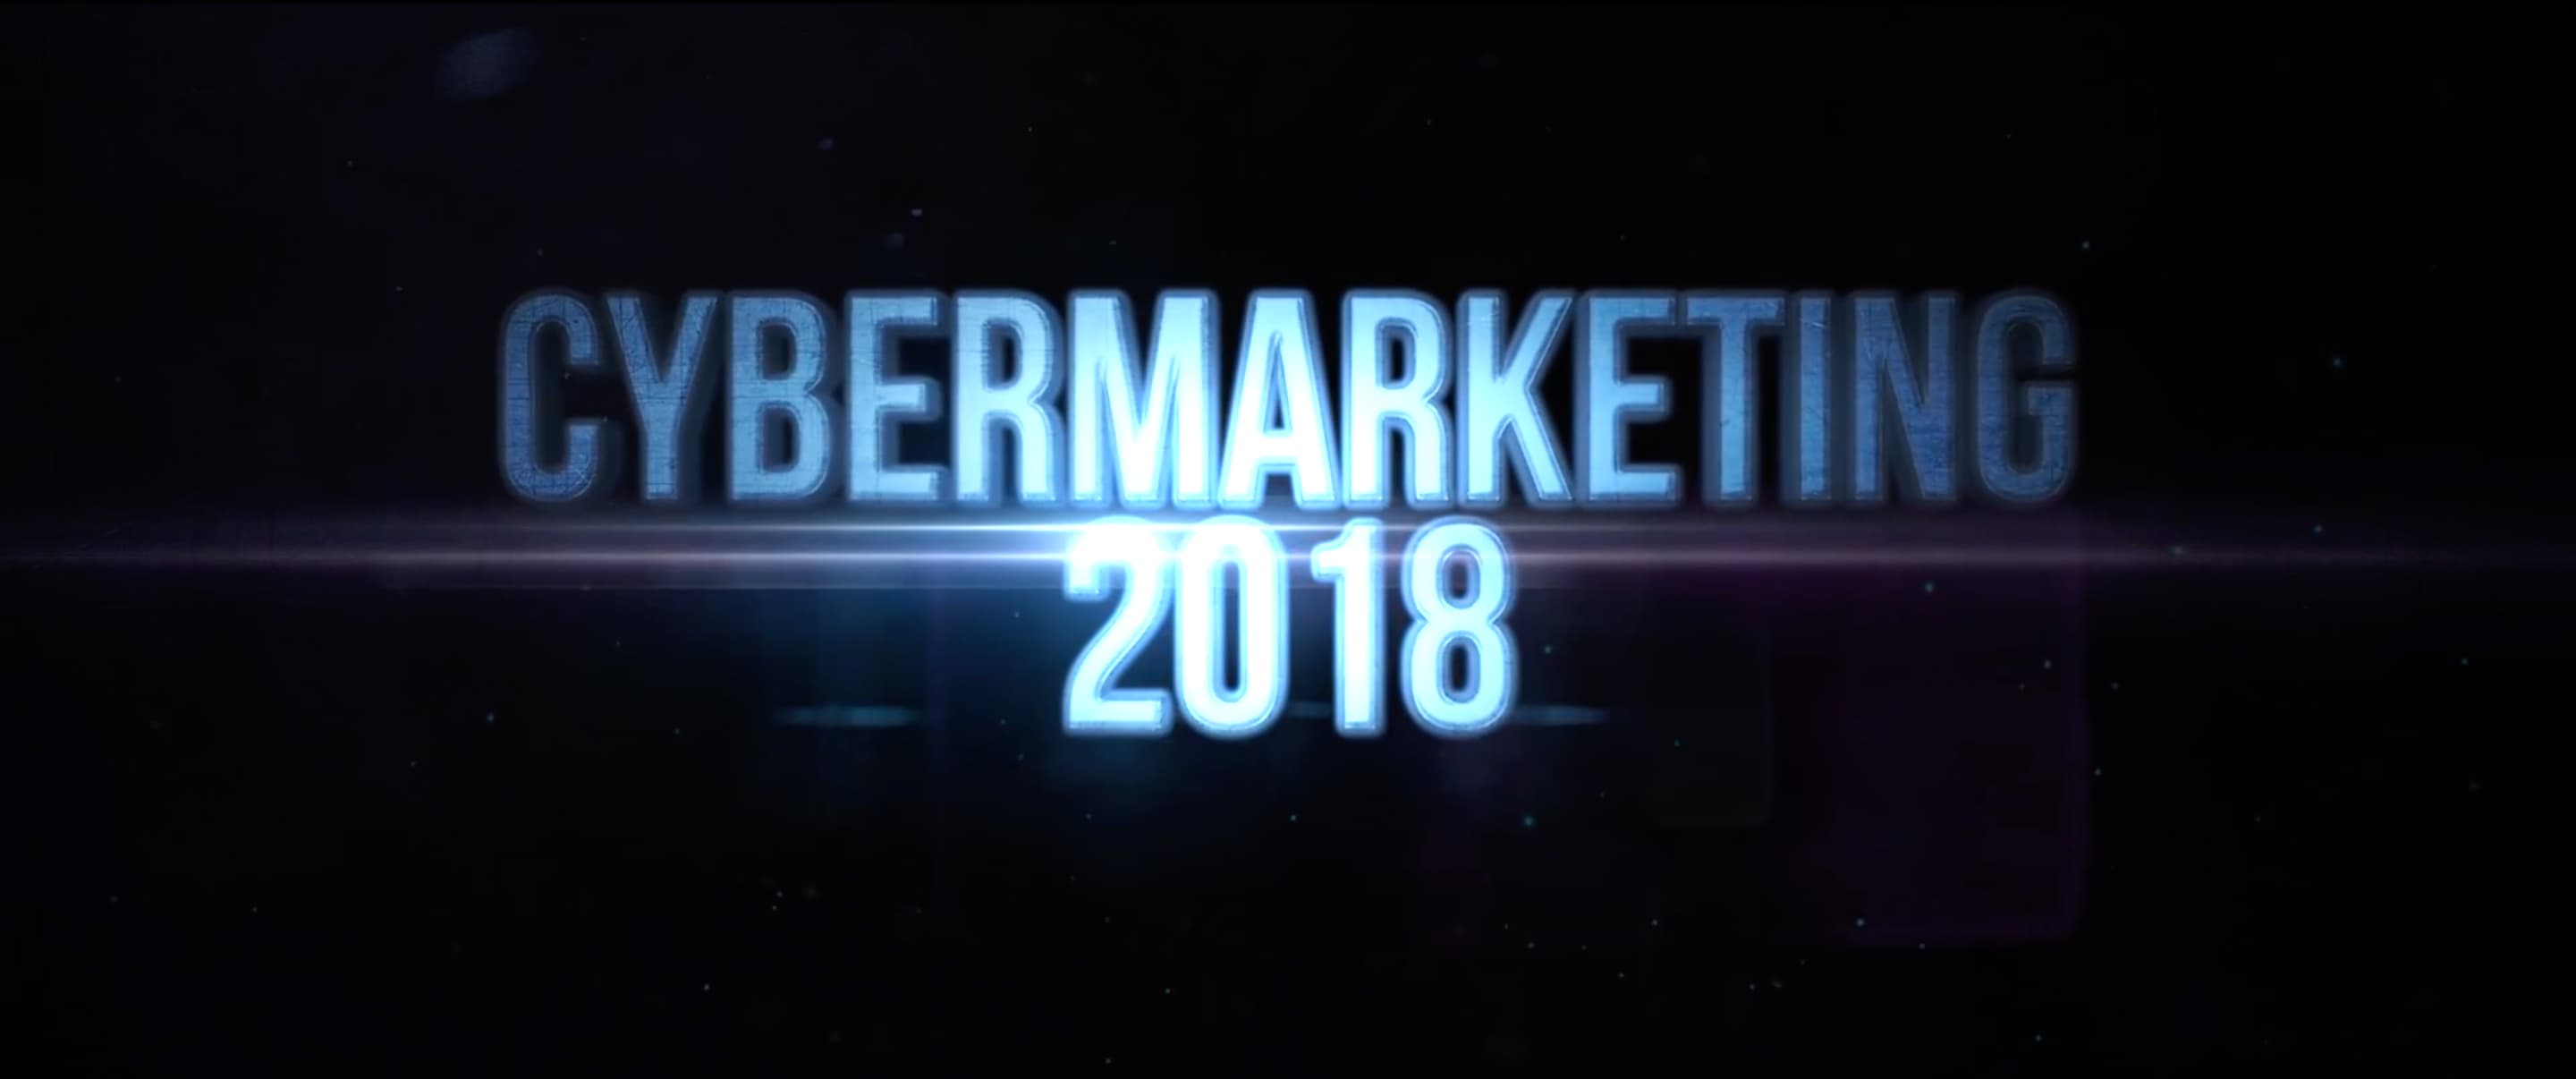 Рекламный ролик для конференции CyberMarketing 2018